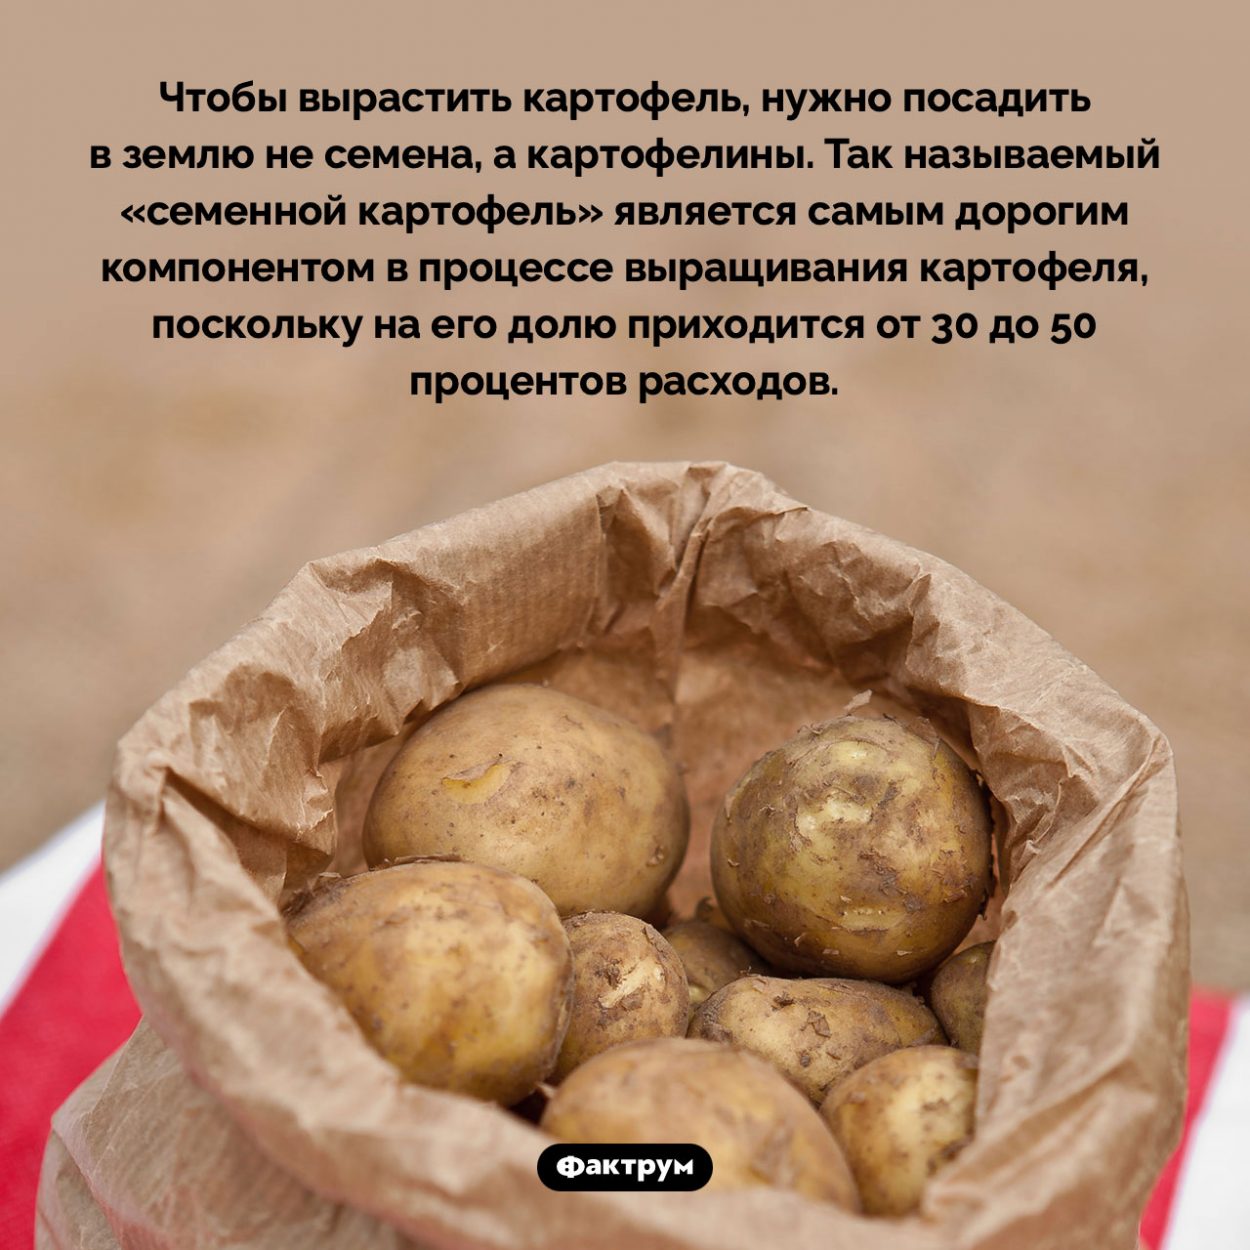 «Семенной картофель» — самый дорогой компонент в процессе выращивания картофеля. Чтобы вырастить картофель, нужно посадить в землю не семена, а картофелины. Так называемый «семенной картофель» является самым дорогим компонентом в процессе выращивания картофеля, поскольку на его долю приходится от 30 до 50 процентов расходов.